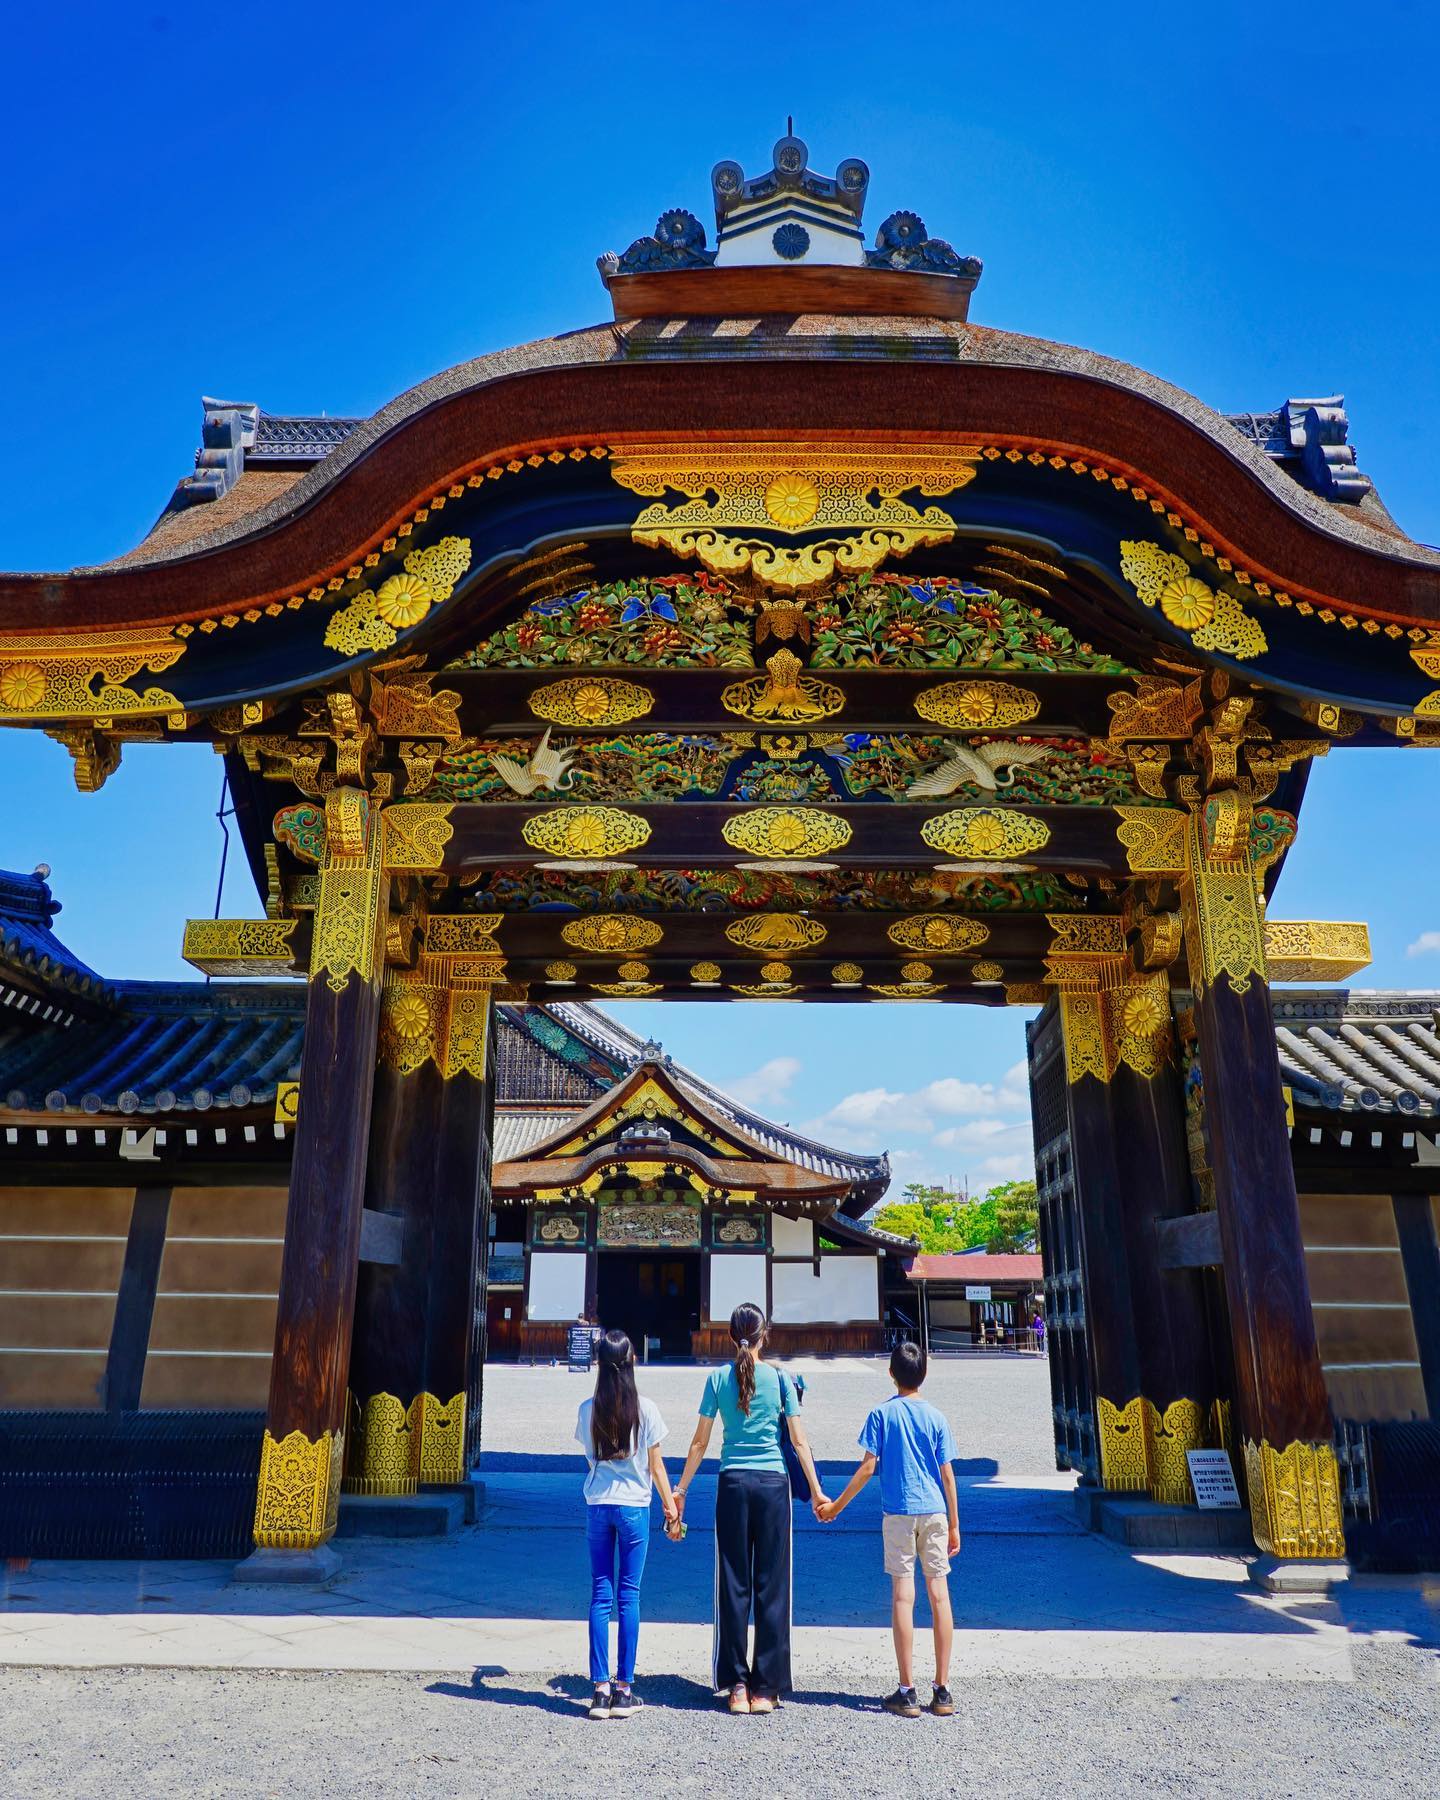 🇯🇵【京都 Kyoto】二条城
🏯 二条城是17世紀初，江戶幕府第一代將軍德川家康所建，作為名義上守護天皇及家族在京都的住所
⛩️Nijō Castle 二条城是見證德川家興衰與日本歷史的重要文化遺產 ，後來成為皇室的別墅，稱為「二條離宮」 ，1994年列入世界遺產
🏵圖一華麗的「唐門」是通往二之丸御殿的正門，貼有金箔裝飾非常氣派華麗。金碧輝煌的唐門是用檜柏樹皮所建成。門上雕刻著代表長壽的鶴及松竹梅，還有龍獅虎等猛獸守護御殿，展現當初幕府將軍欲凌駕在天皇之野心
🌳二之丸庭園是書院風格的池泉庭園，出自於小堀遠州之手，象徵神泉蓬萊世界的庭園，由複雜形狀的泉池搭配大小石頭所組成，又被稱為「八陣之庭」
#kyoto #京都 #二條城 #二条城 #二条城唐門 #把世界當教室 #牽手照系列👫 #travelwithmikeanna